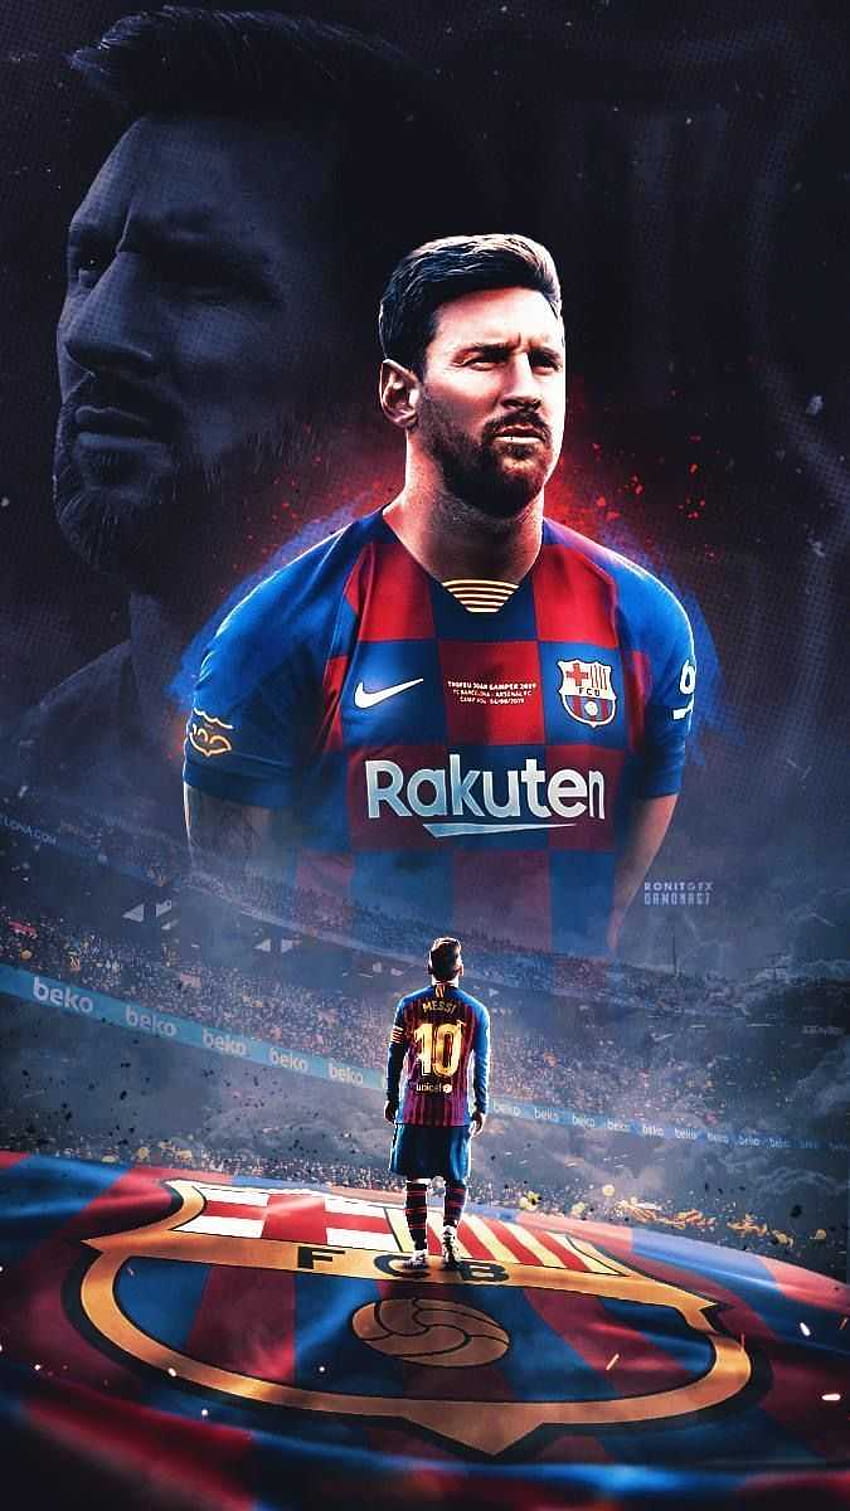 Đừng bỏ lỡ cơ hội tải xuống hình nền điện thoại HD của Lionel Messi. Với độ sắc nét và chất lượng đỉnh cao, hình ảnh này sẽ làm cho màn hình điện thoại của bạn trở nên nổi bật và thu hút người xem.